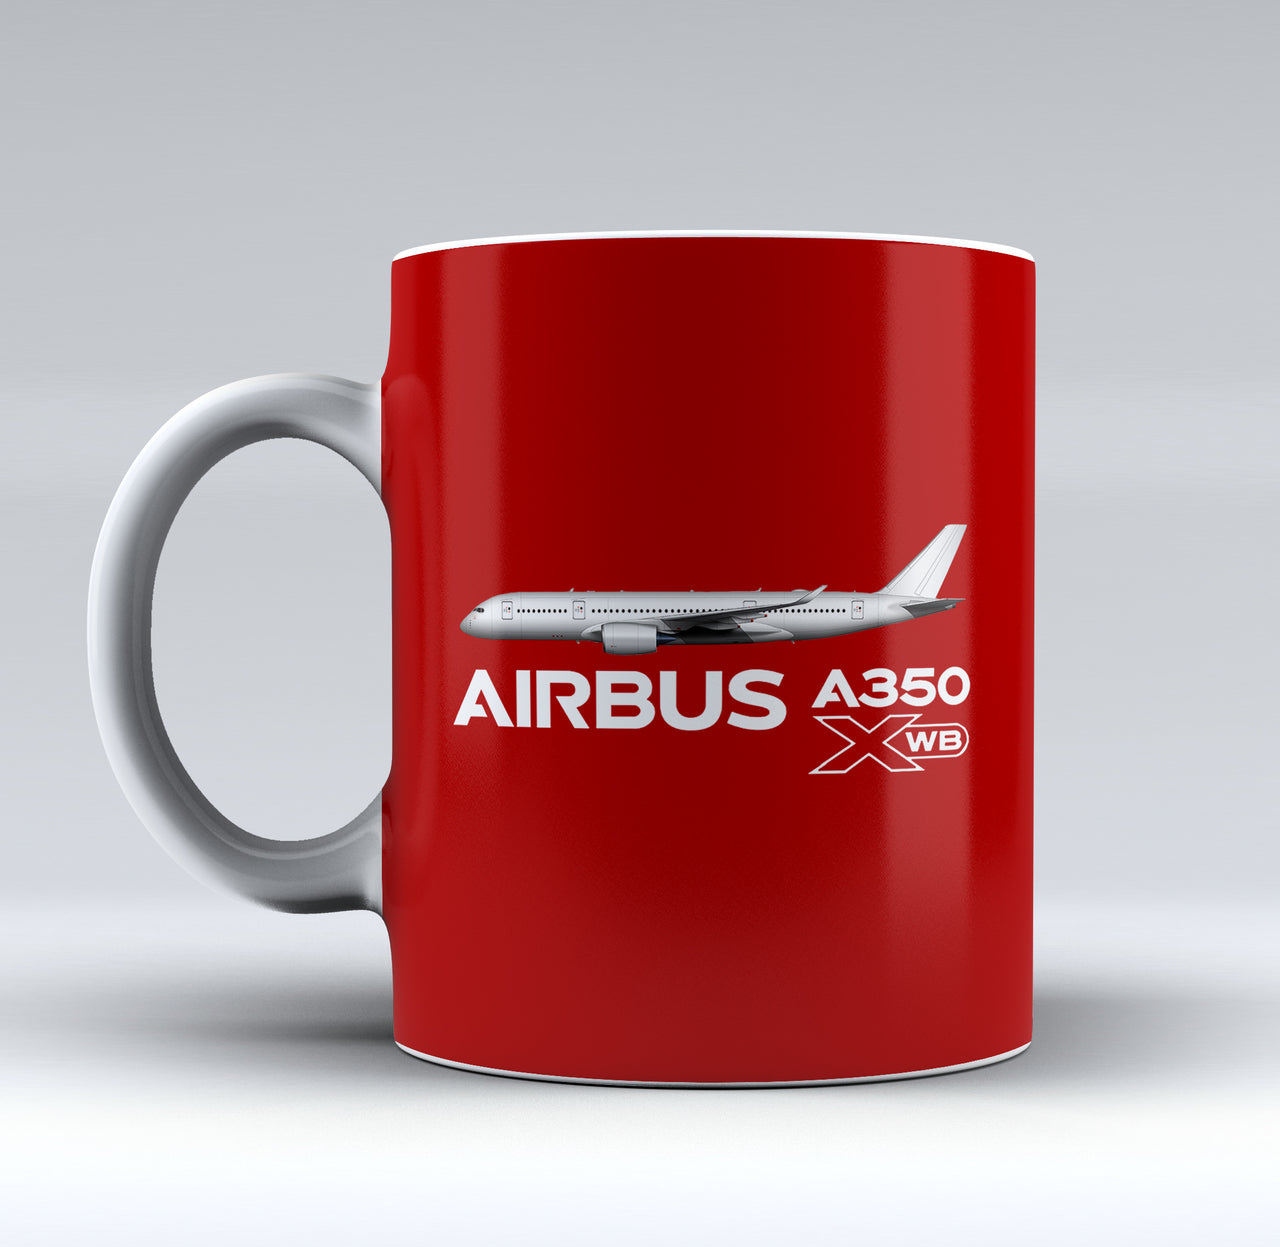 The Airbus A350 XWB Designed Mugs